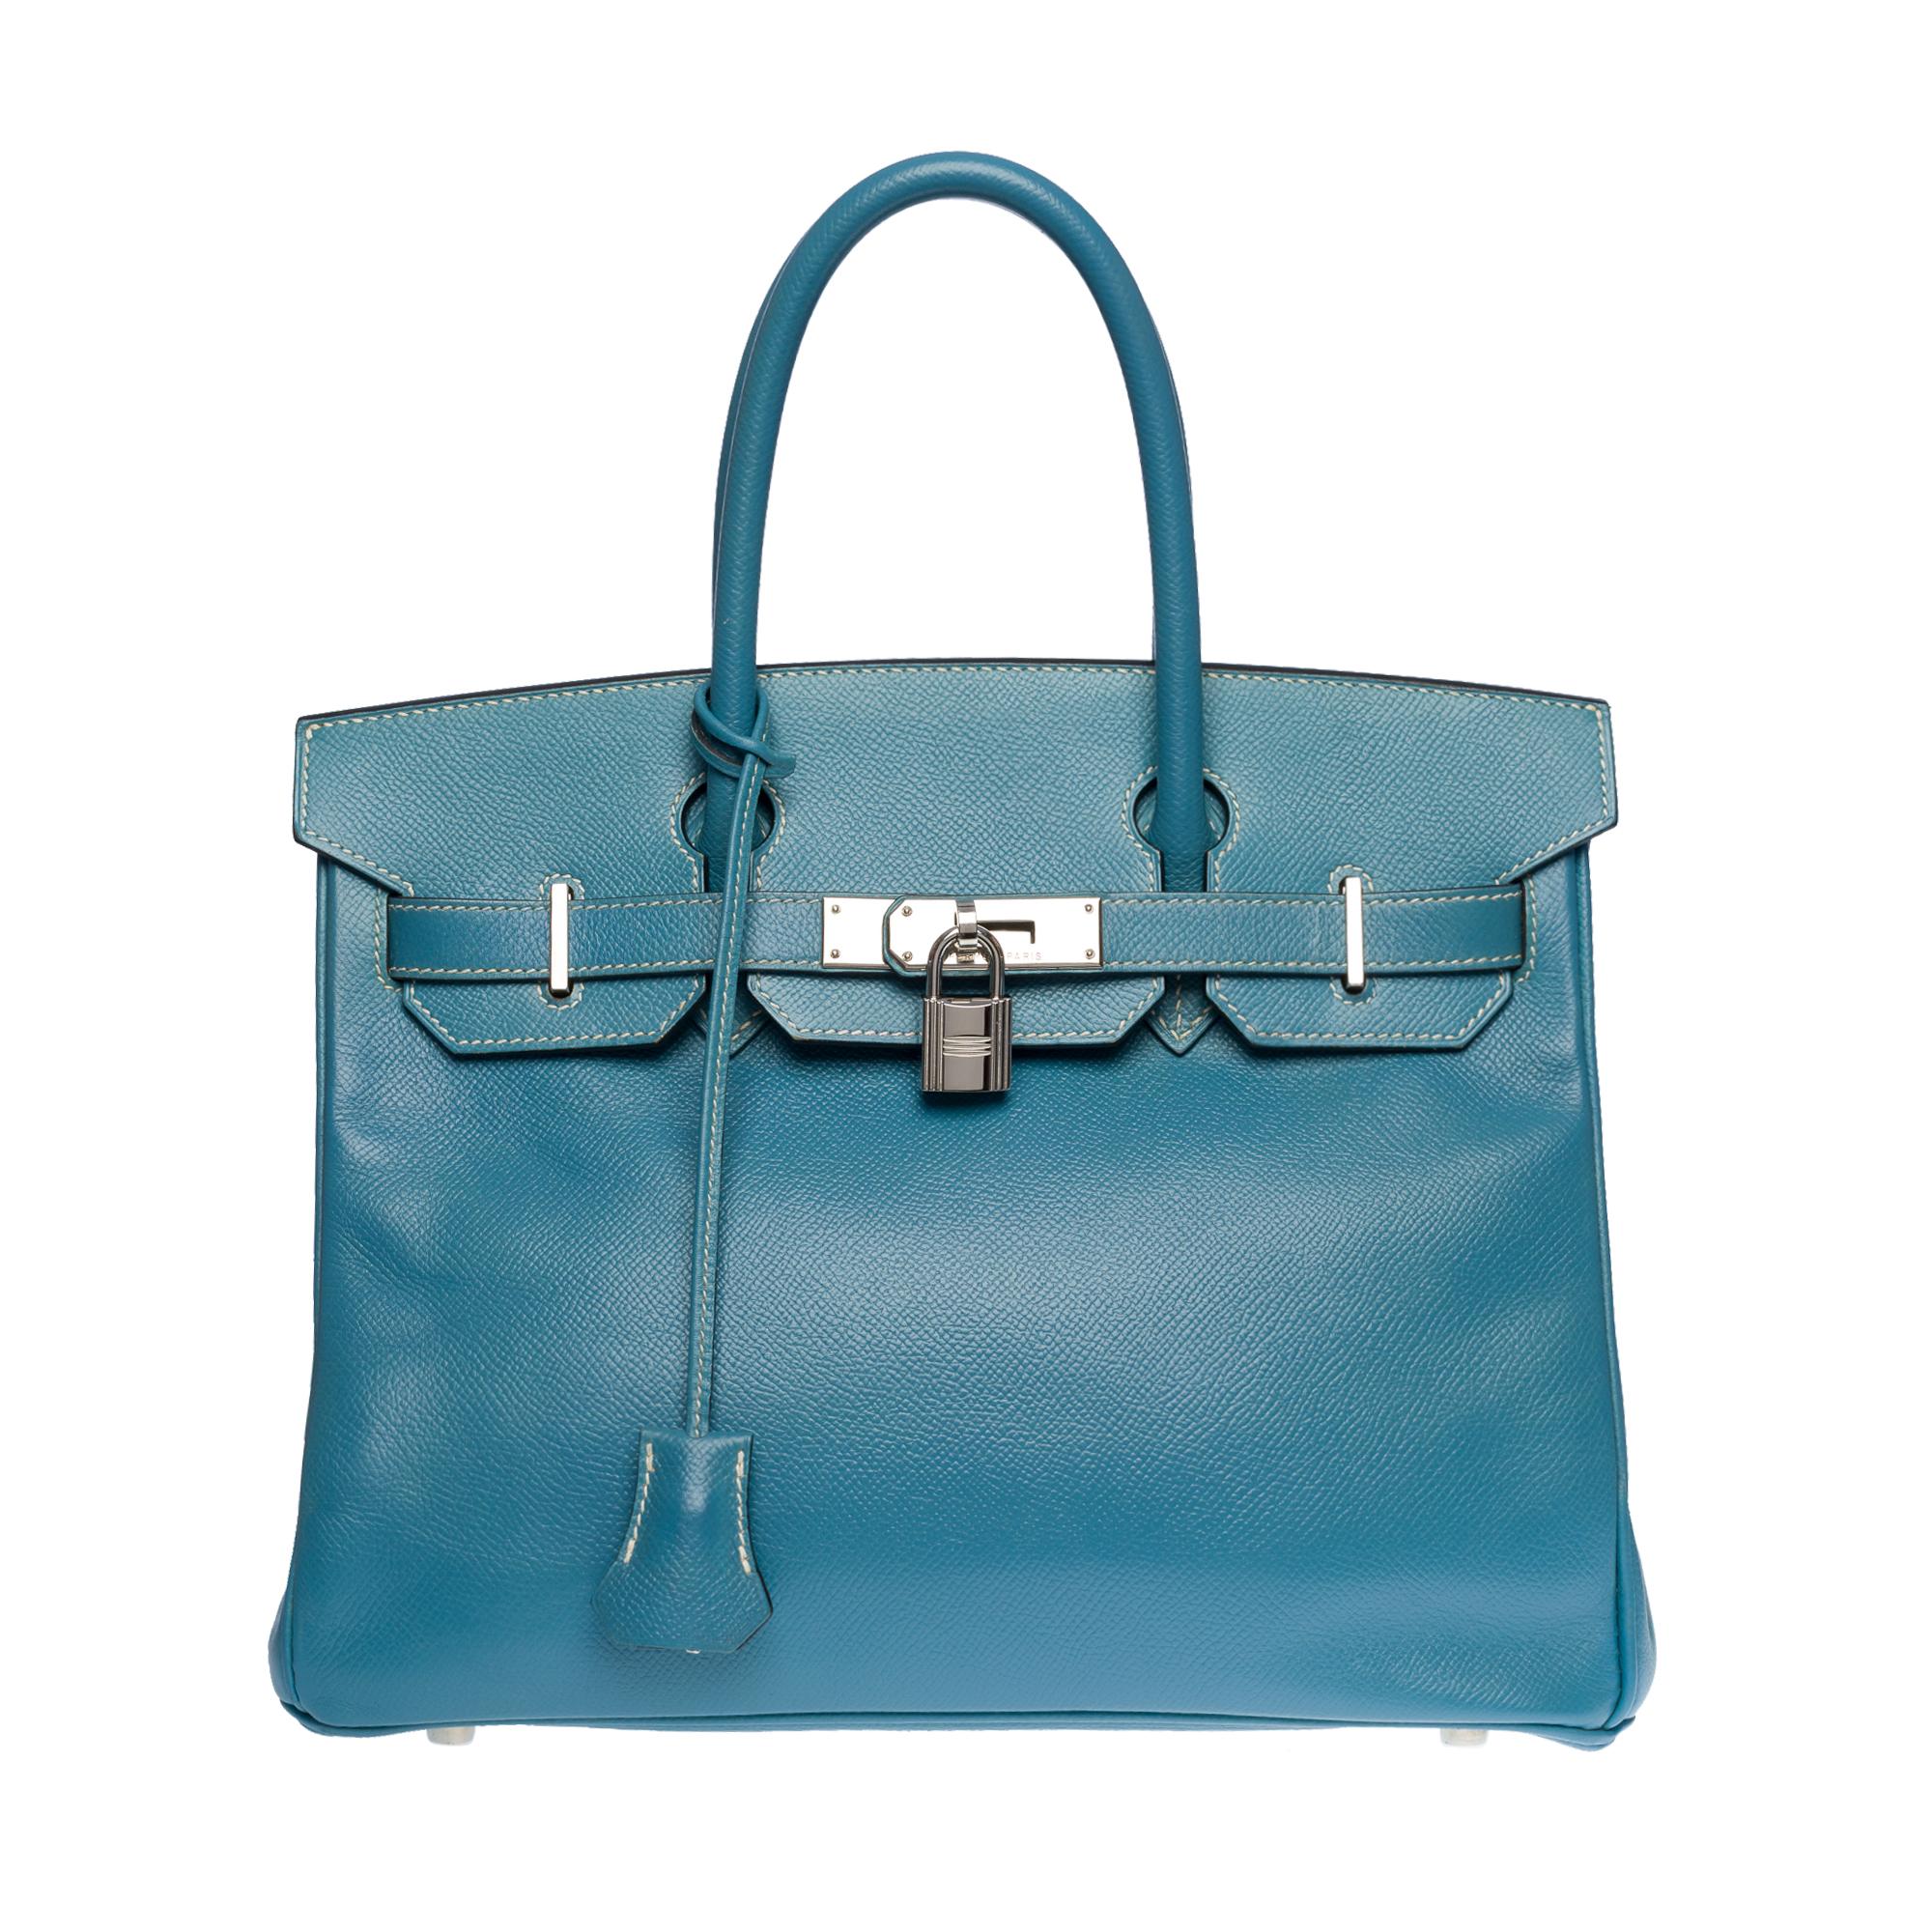 Superbe sac à main Hermès Birkin 30 en Blue Jeans Epsom avec surpiqûres blanches, quincaillerie en métal Palladium Silver, double poignée en cuir bleu pour un portage à la main.

Fermeture à rabat
Doublure intérieure en cuir bleu, une poche zippée,